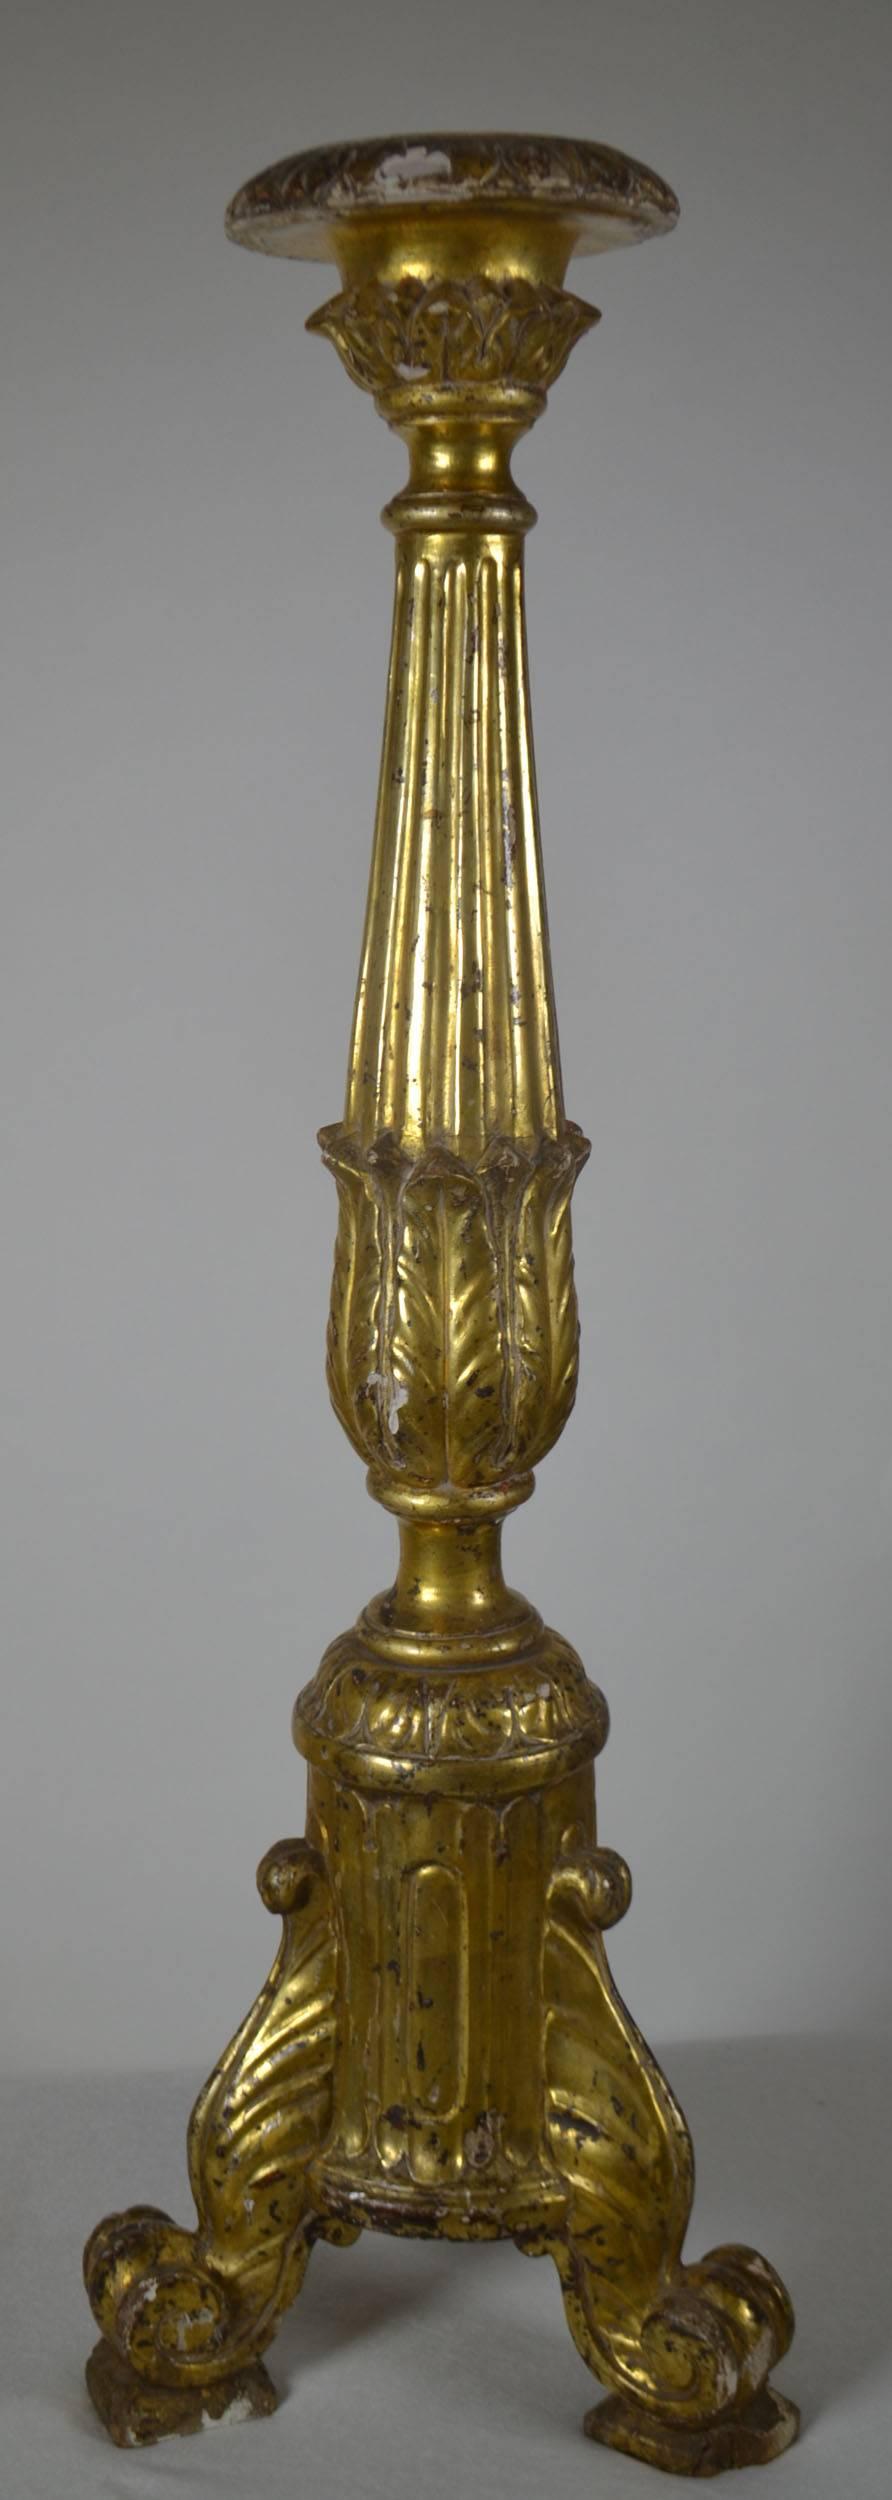 Vergoldeter Kerzenständer aus der Louis XVI-Zeit mit kannelierter Säule, die in Akanthusblättern endet, und Rollfüßen. Einige Absplitterungen an der Ober- und Unterseite des Stücks.